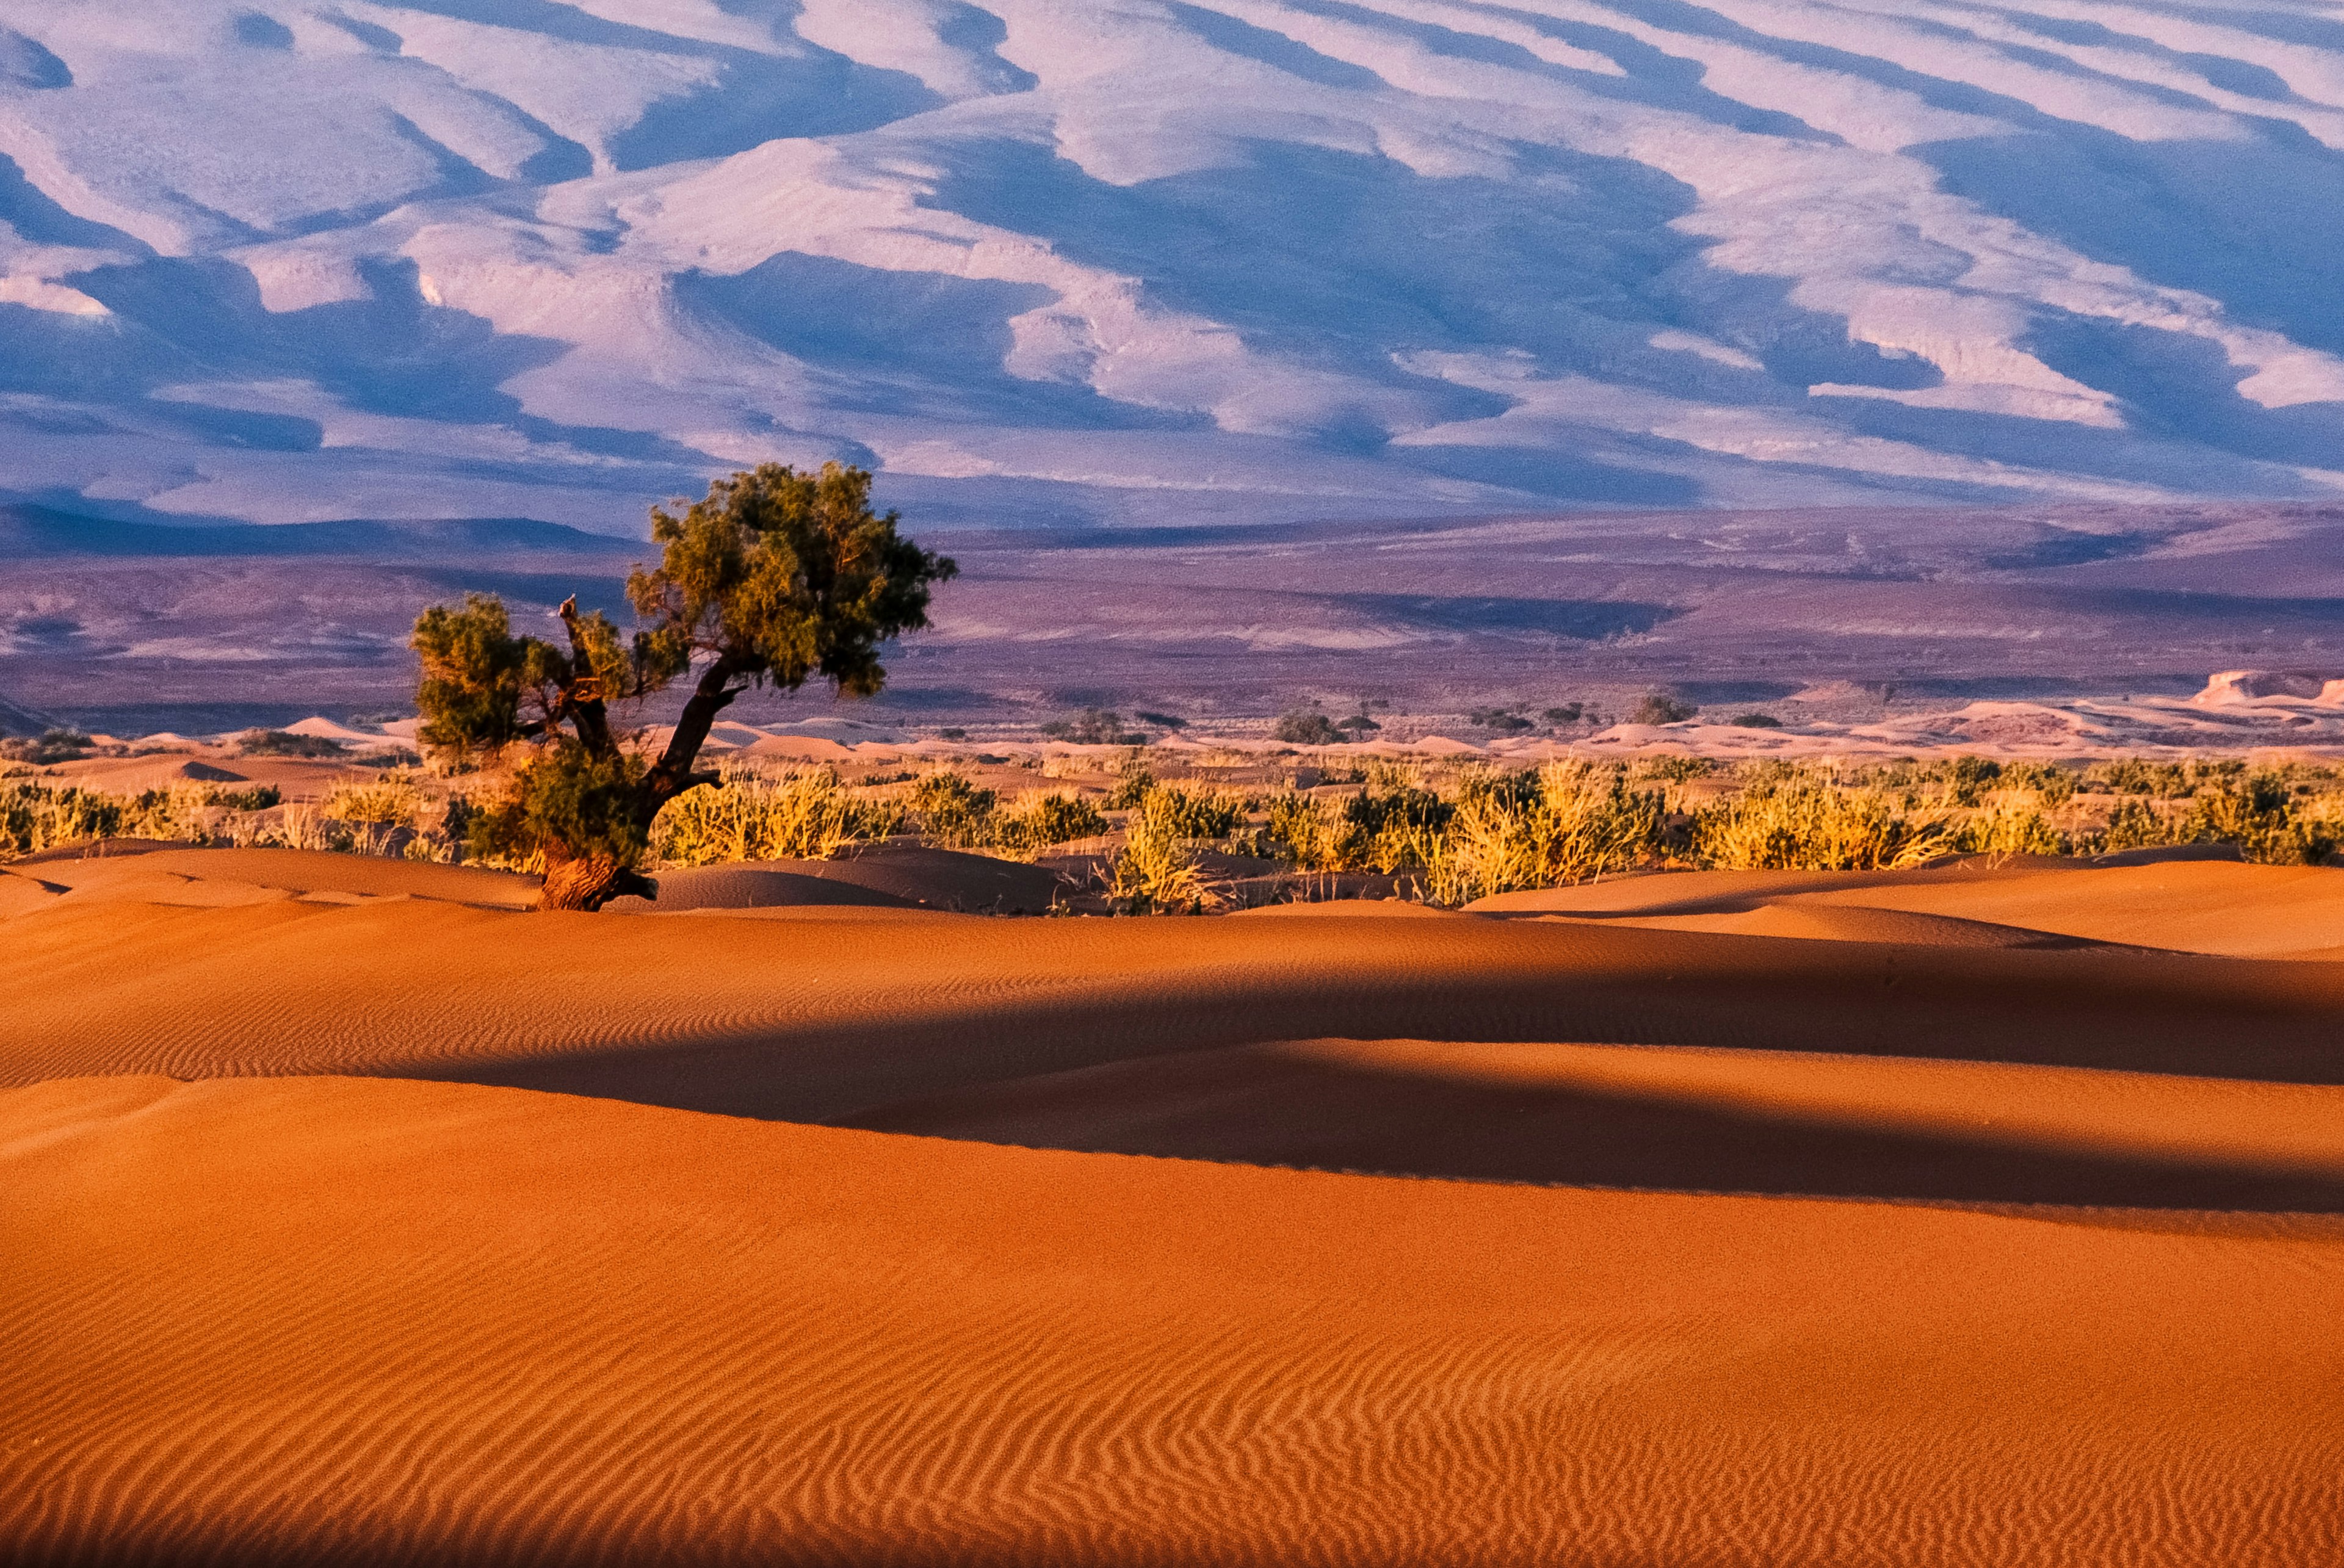 il deserto in marocco, una delle cose da vedere durante il viaggio